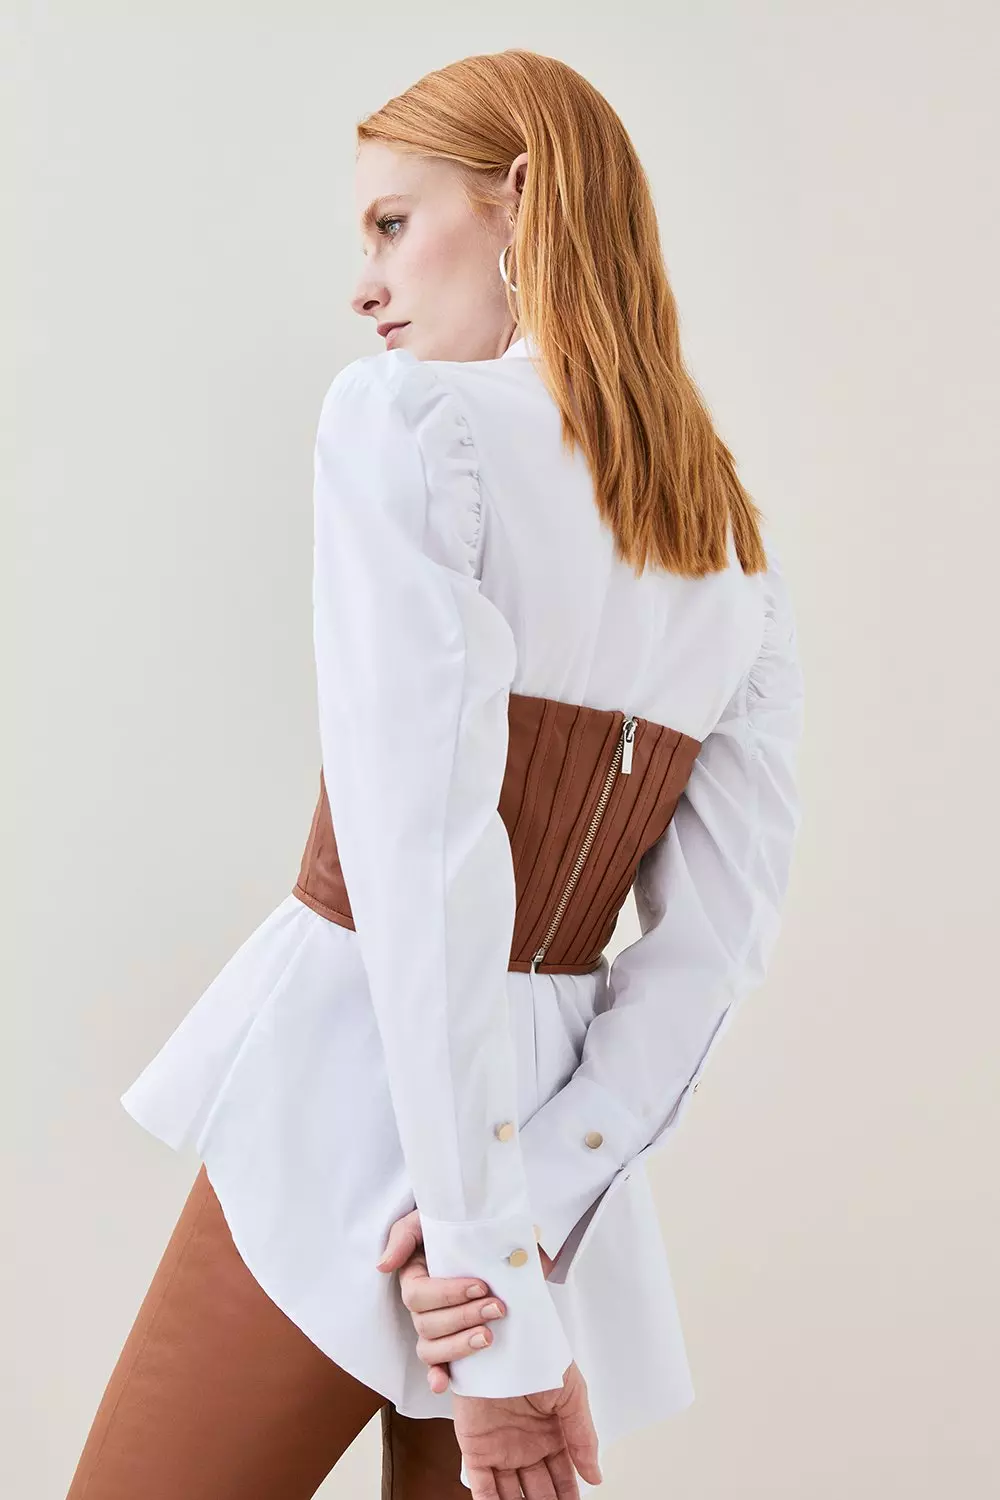 Lydia Millen Leather Corset Top | Karen Millen